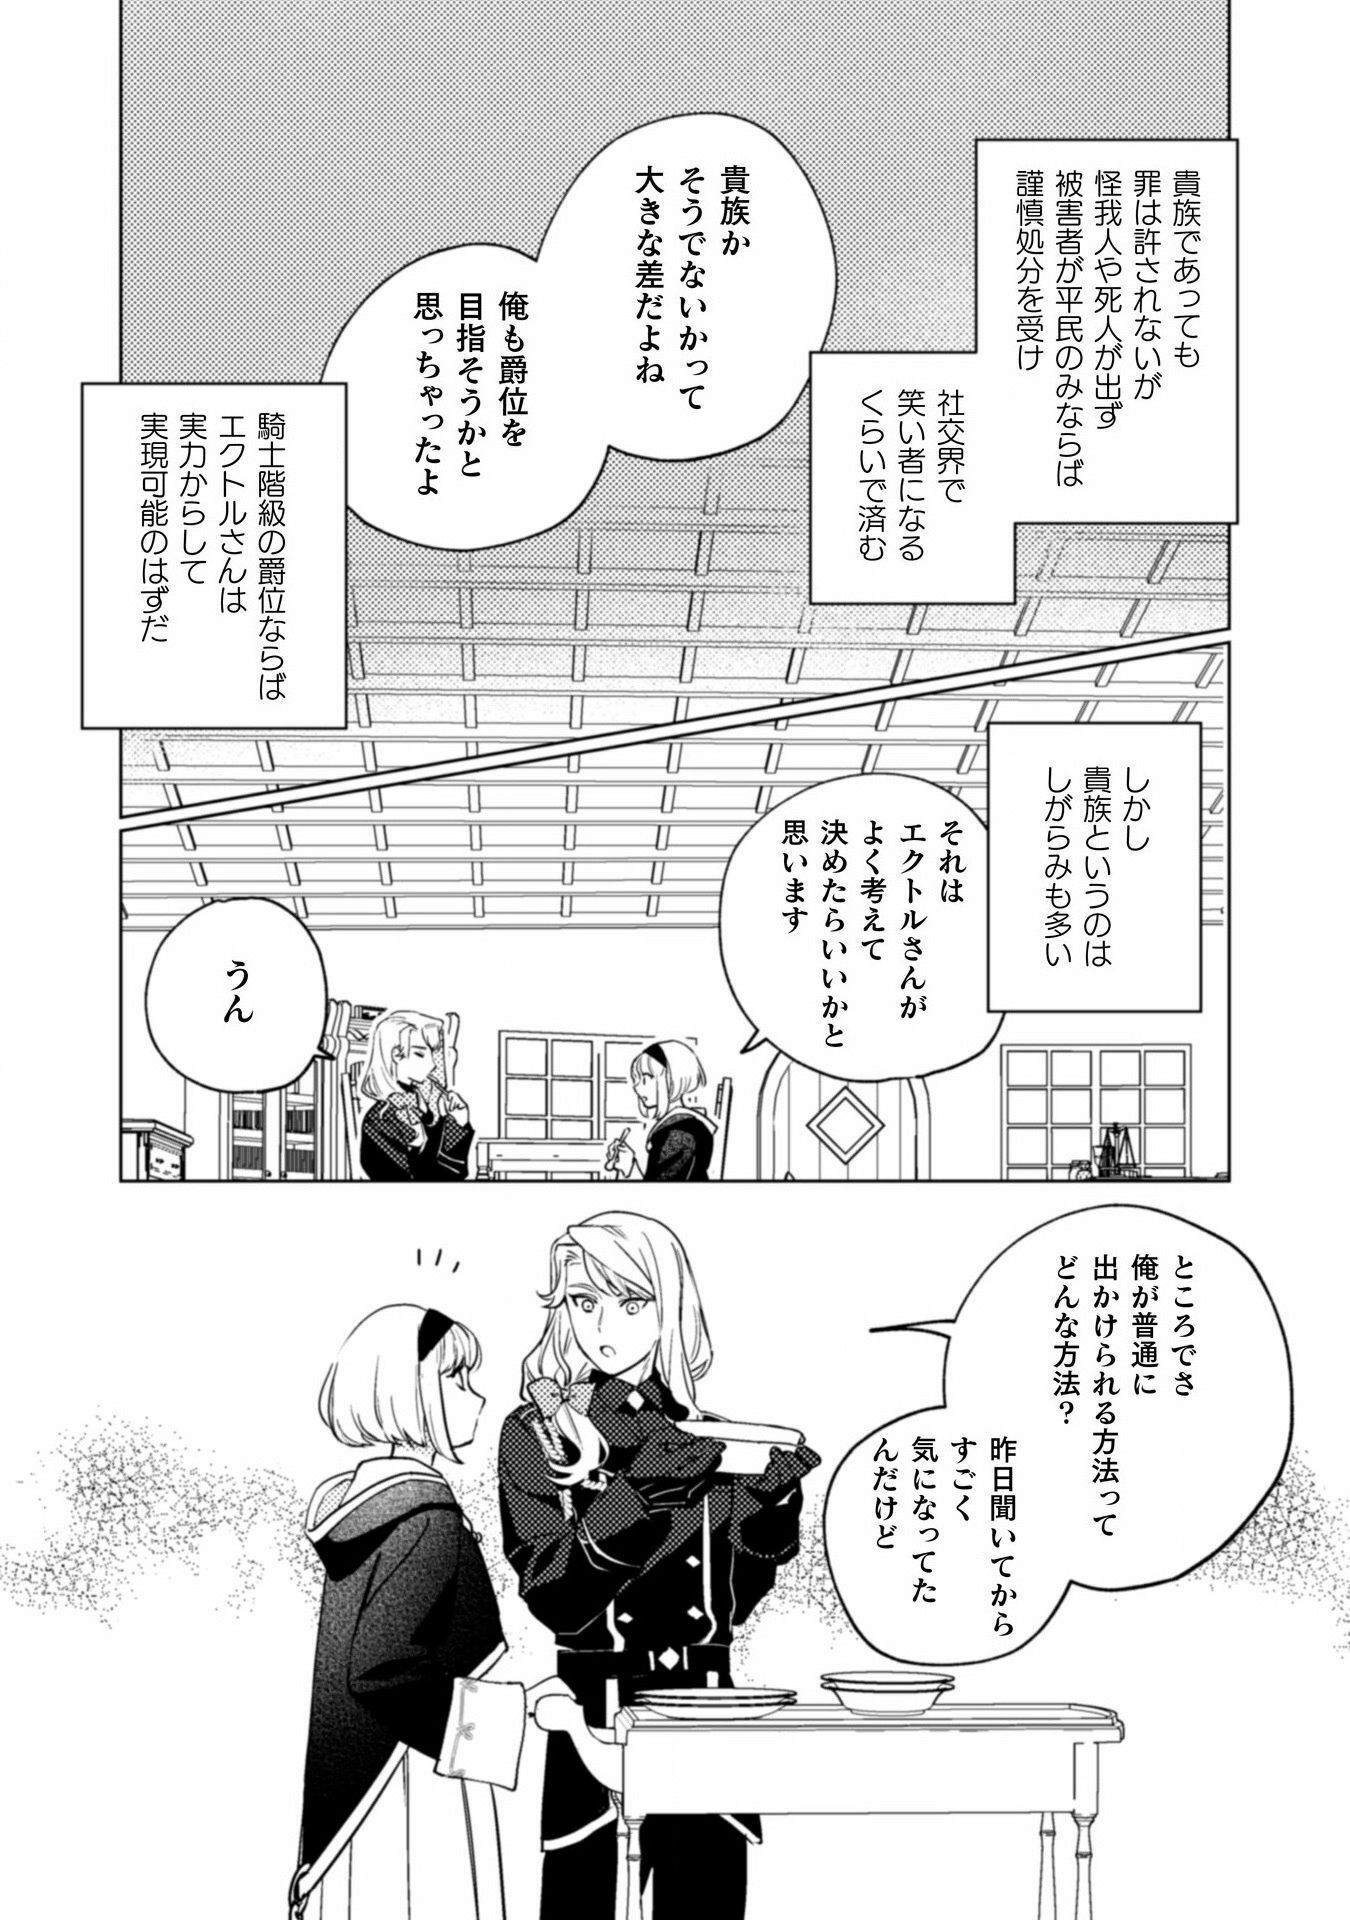 Uranaishi ni wa Hana Kishi no Koigokoro ga Mieteimasu - Chapter 23 - Page 2